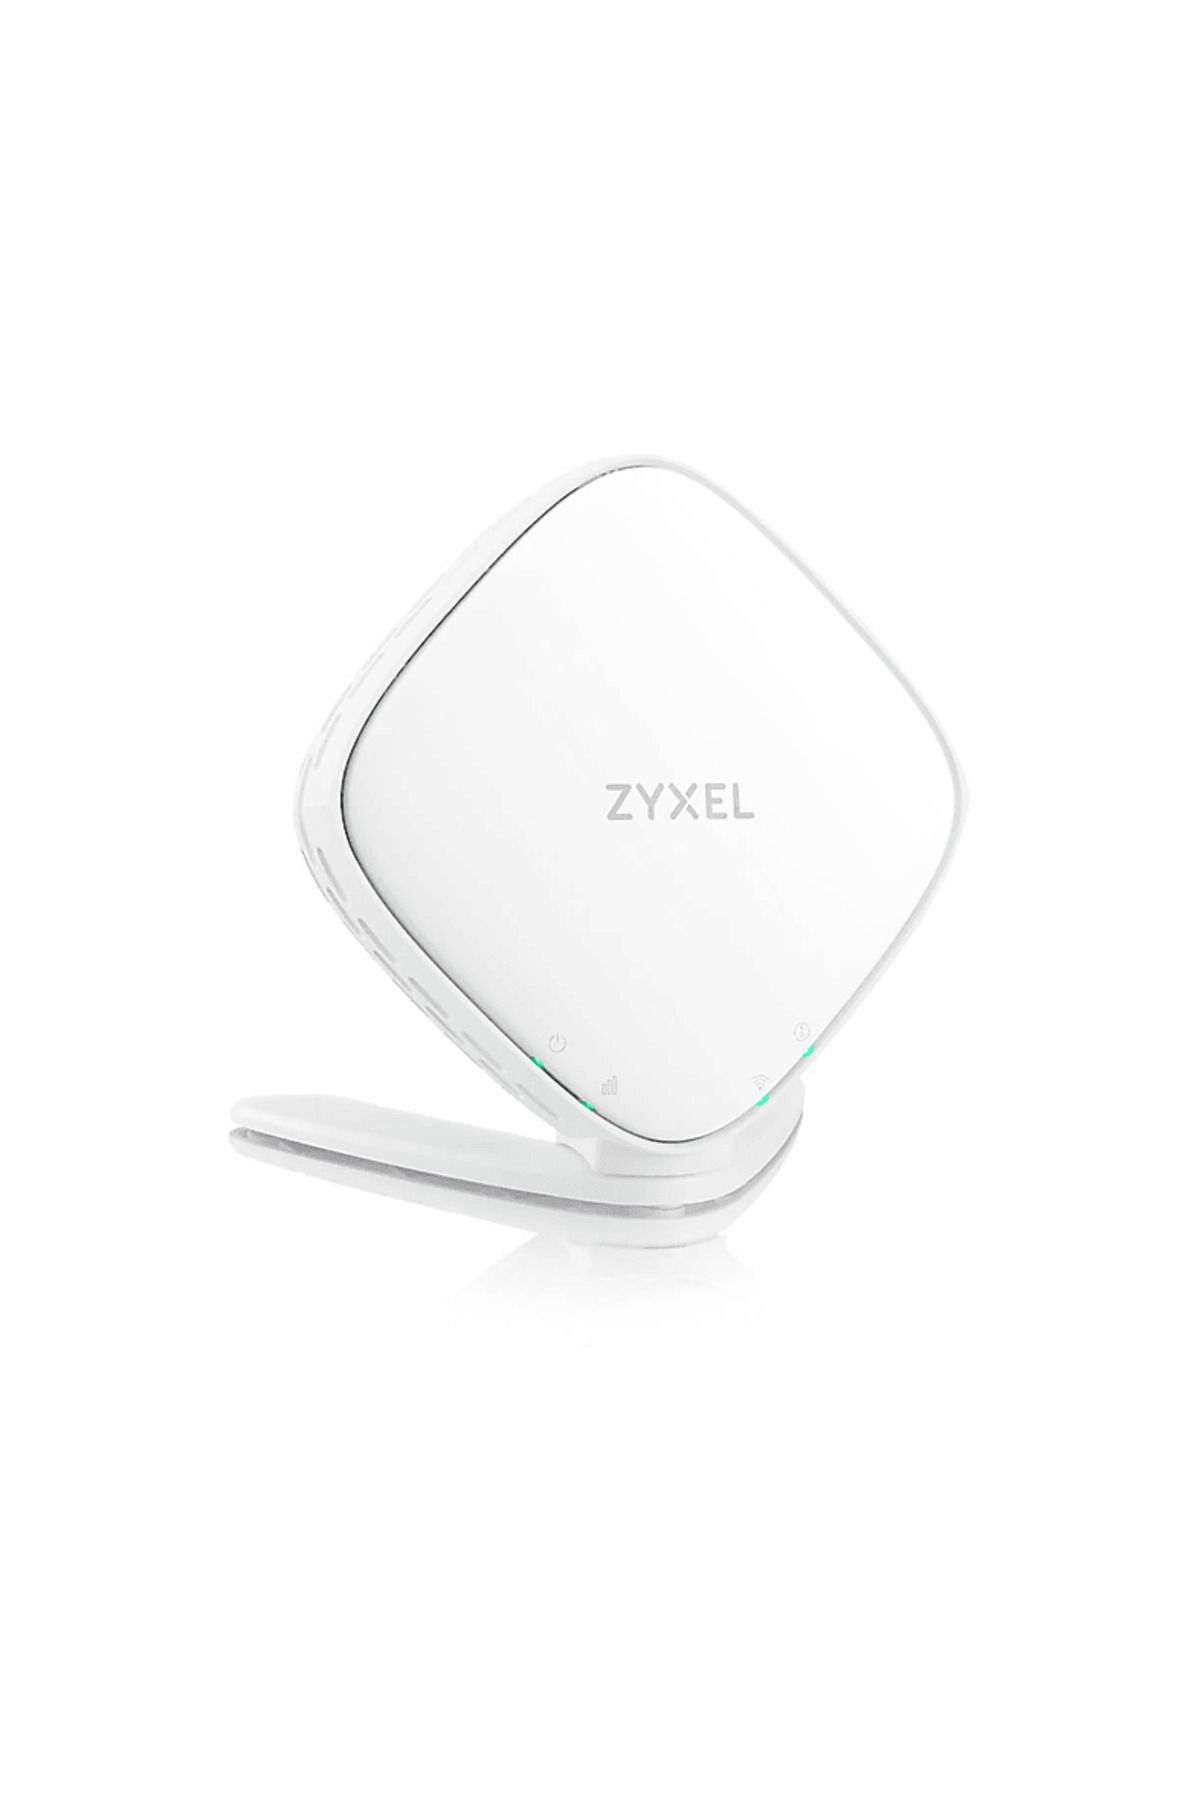 Zyxel WX3100-T0-EU01V2F AX1800 Gigabit Access Point/Extender